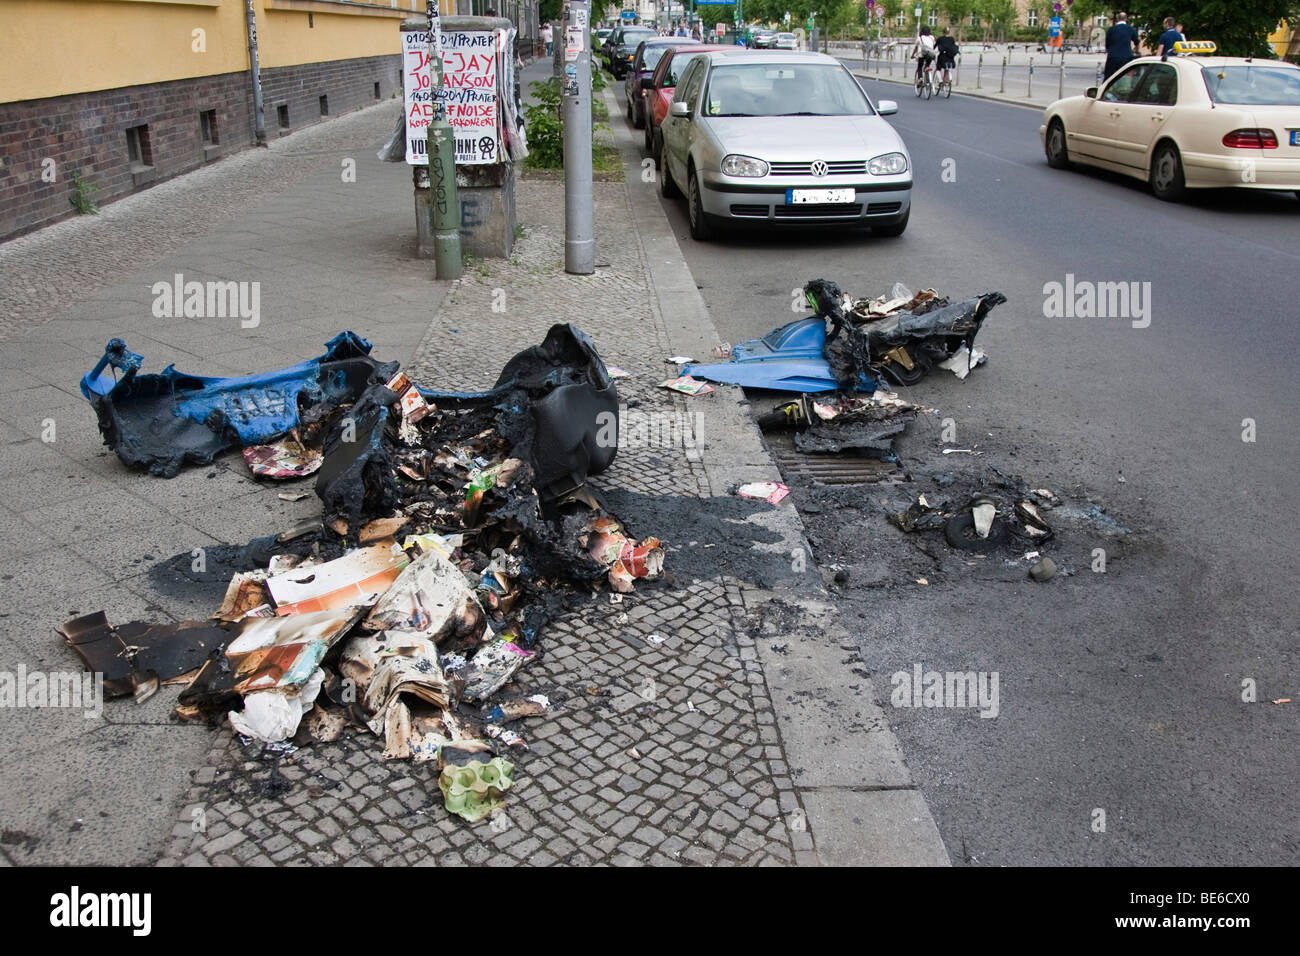 Conteneur de déchets brûlés au 1er mai, manifestations, Berlin, Germany, Europe Banque D'Images